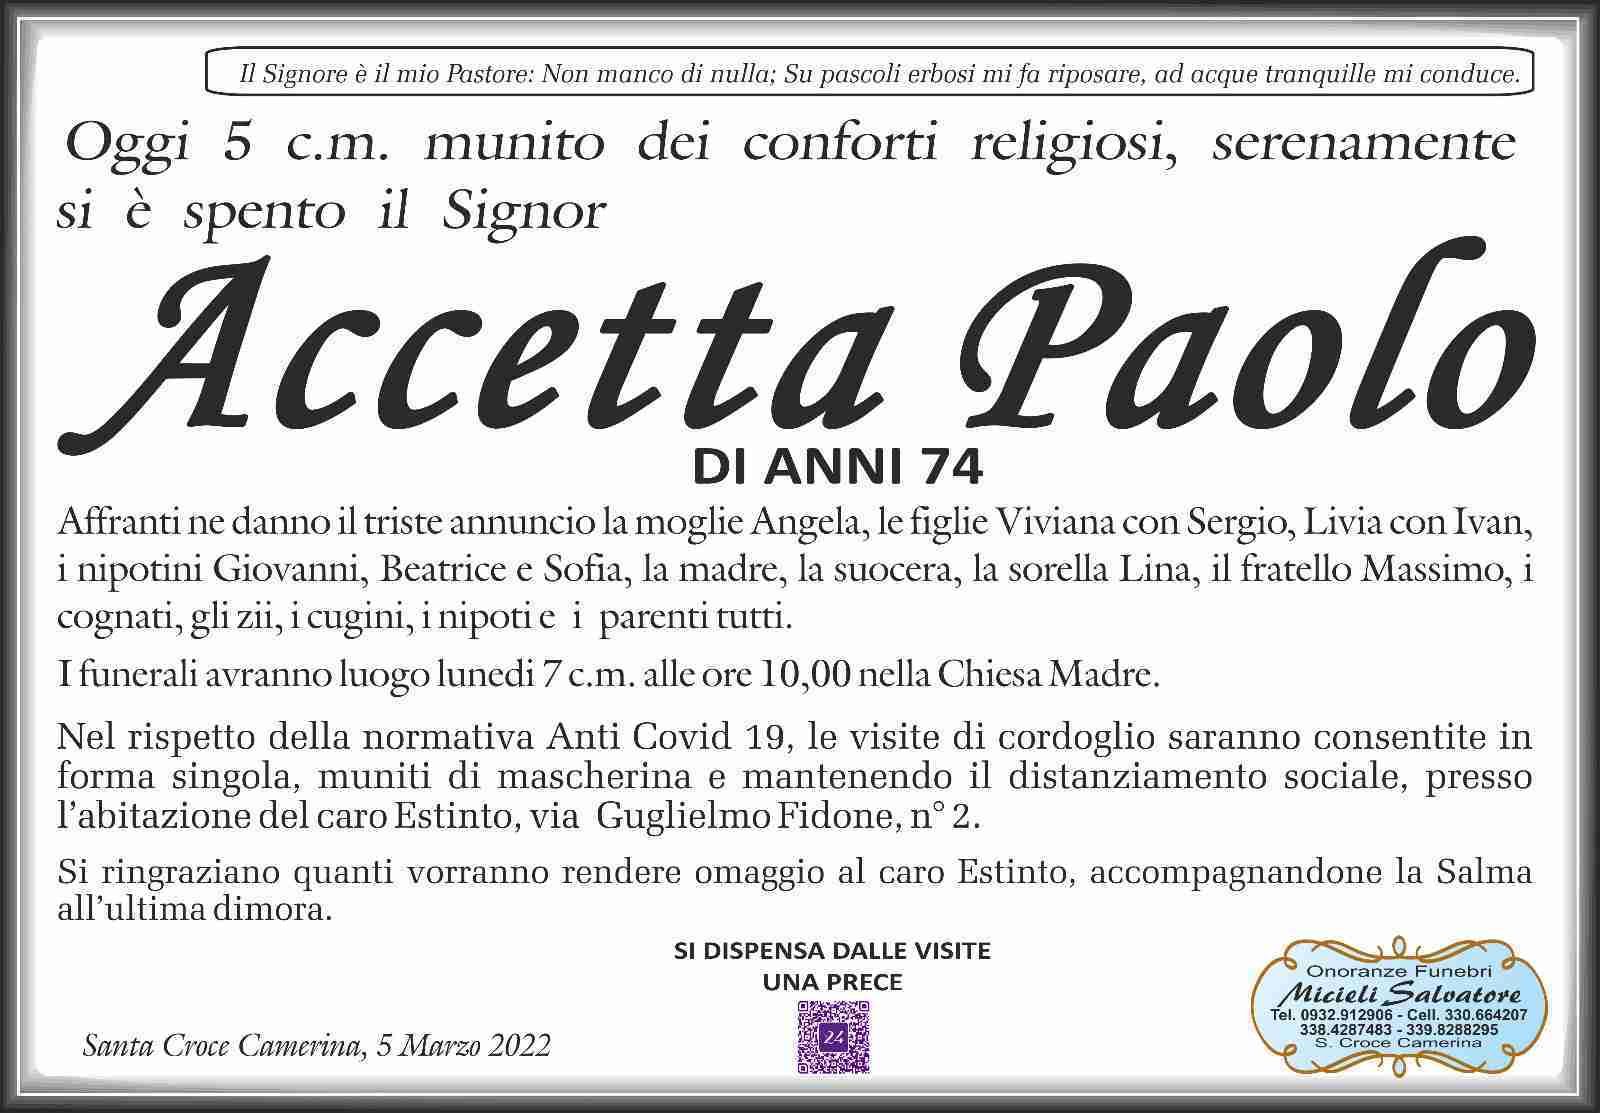 Paolo Accetta